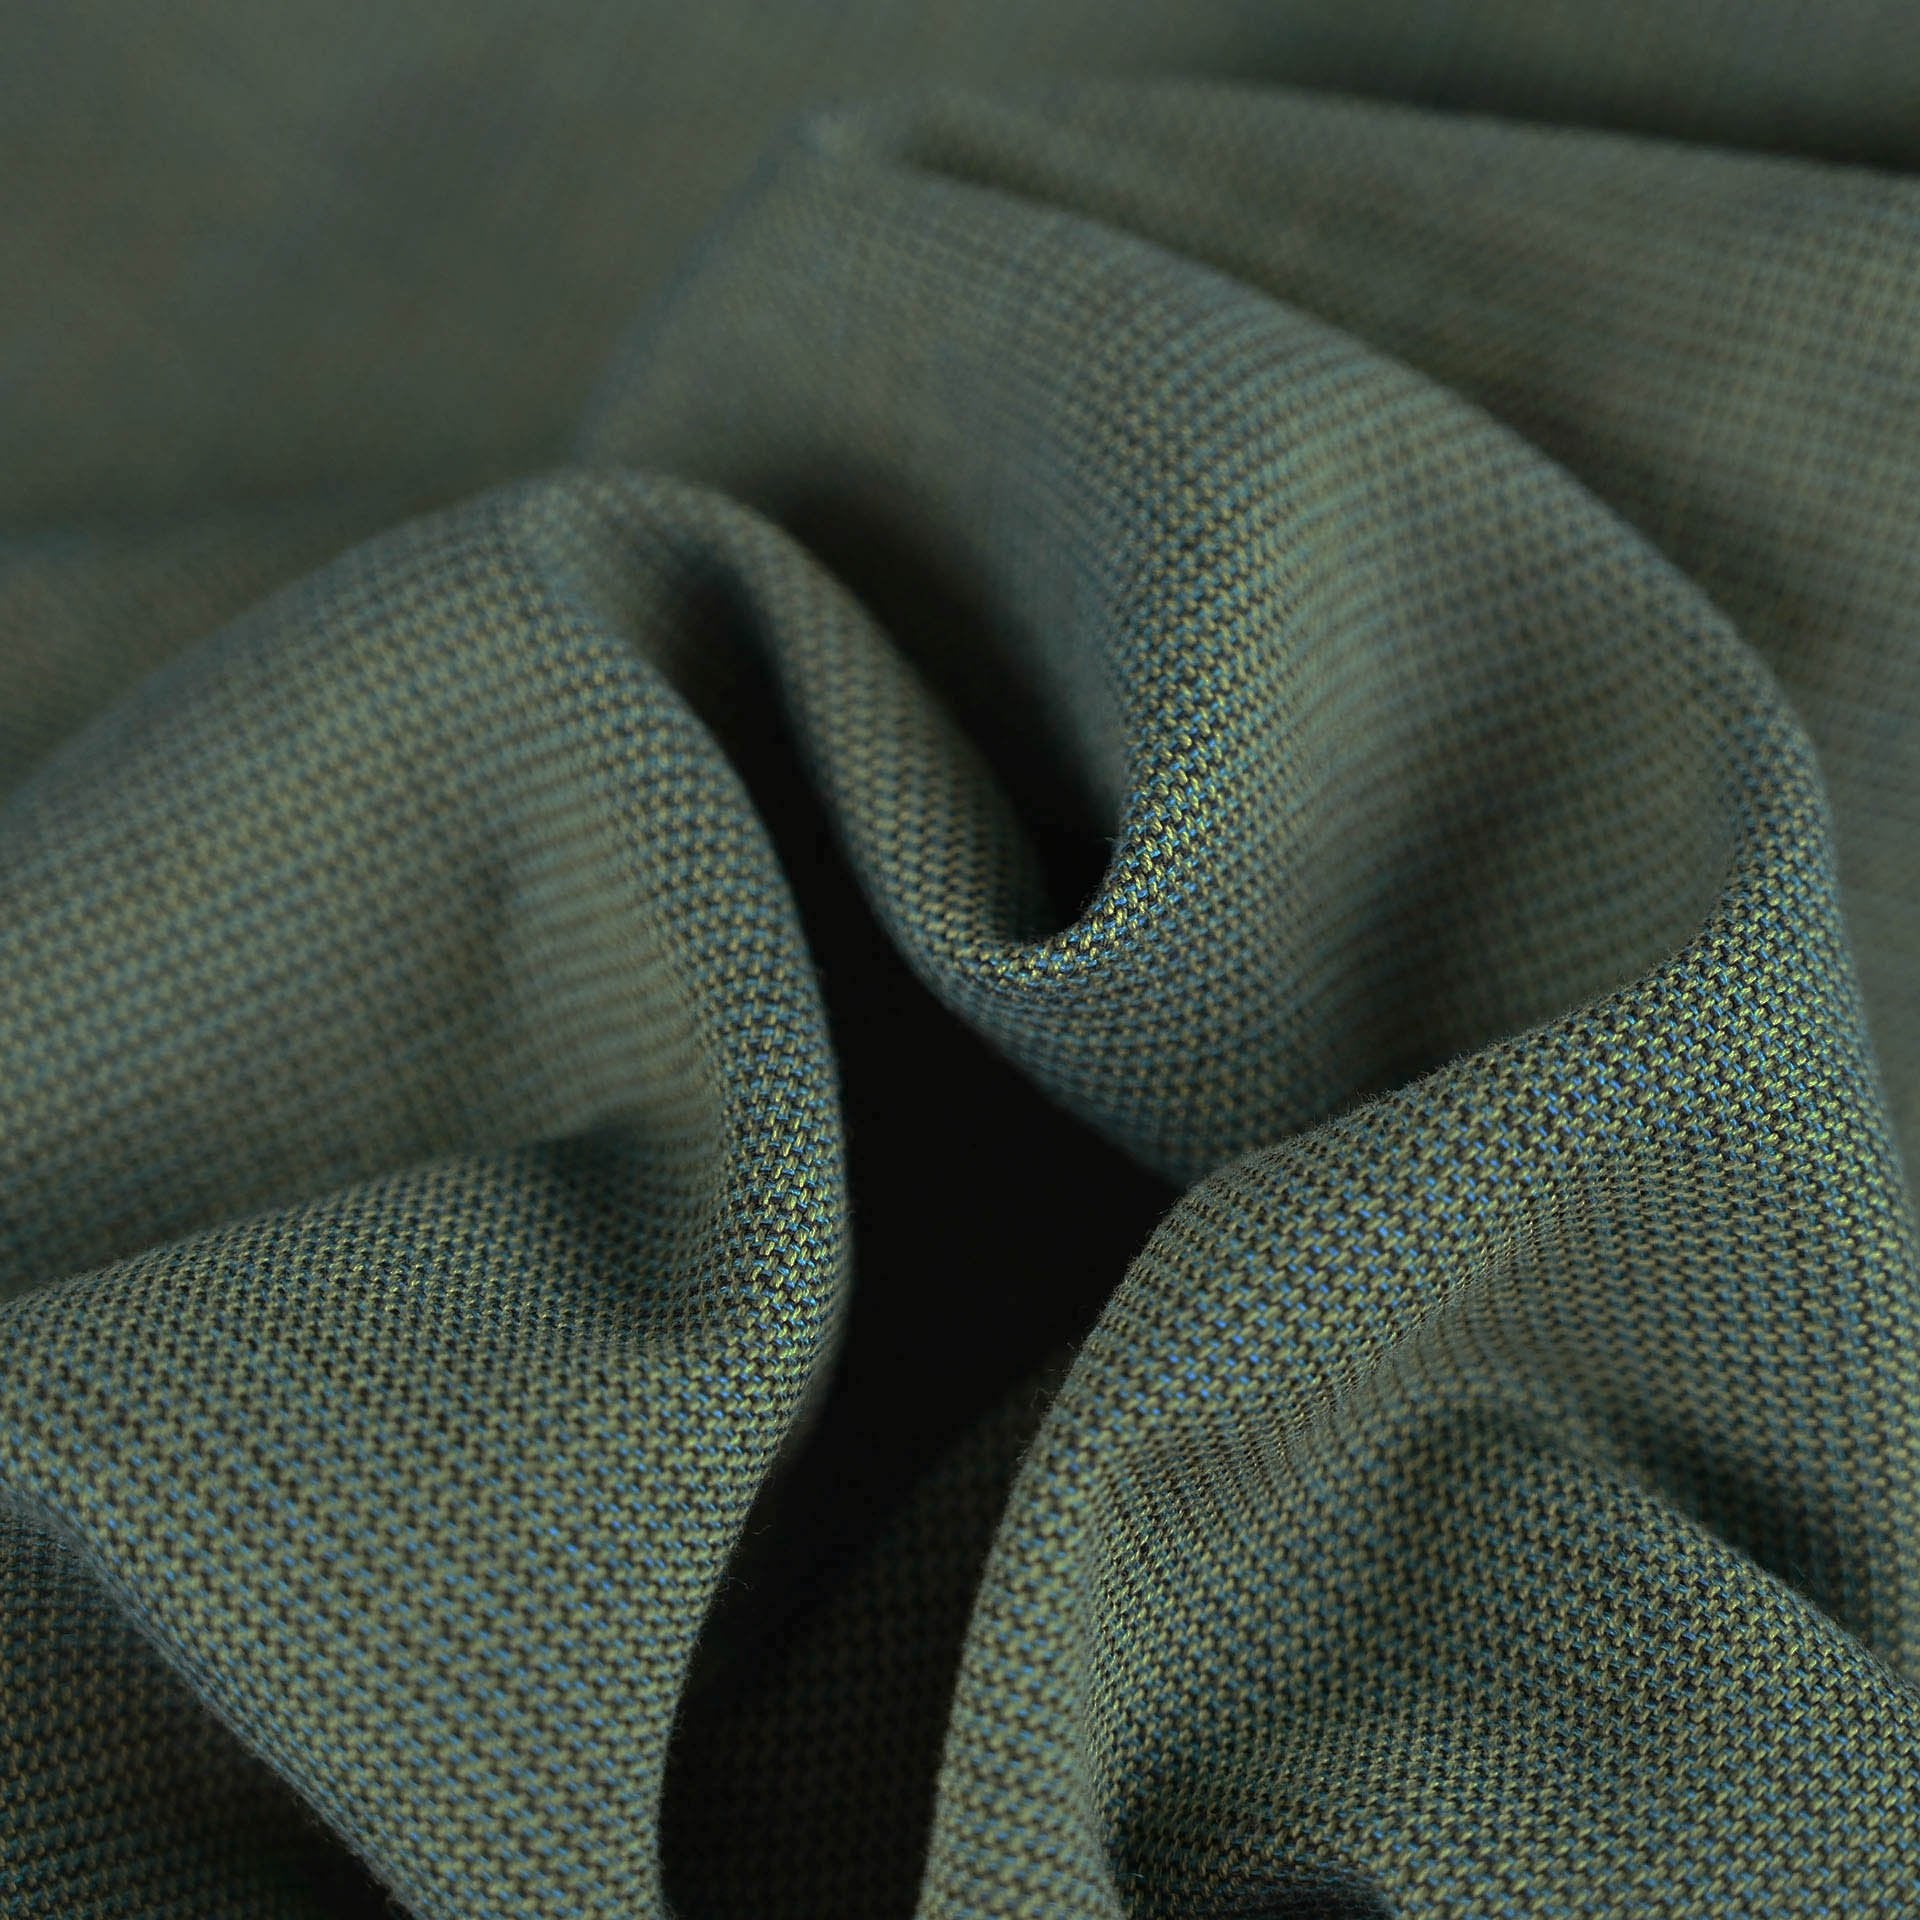 http://fabrics4fashion.com/cdn/shop/products/Green_Cotton_Blend_5538_2.jpg?v=1643656200